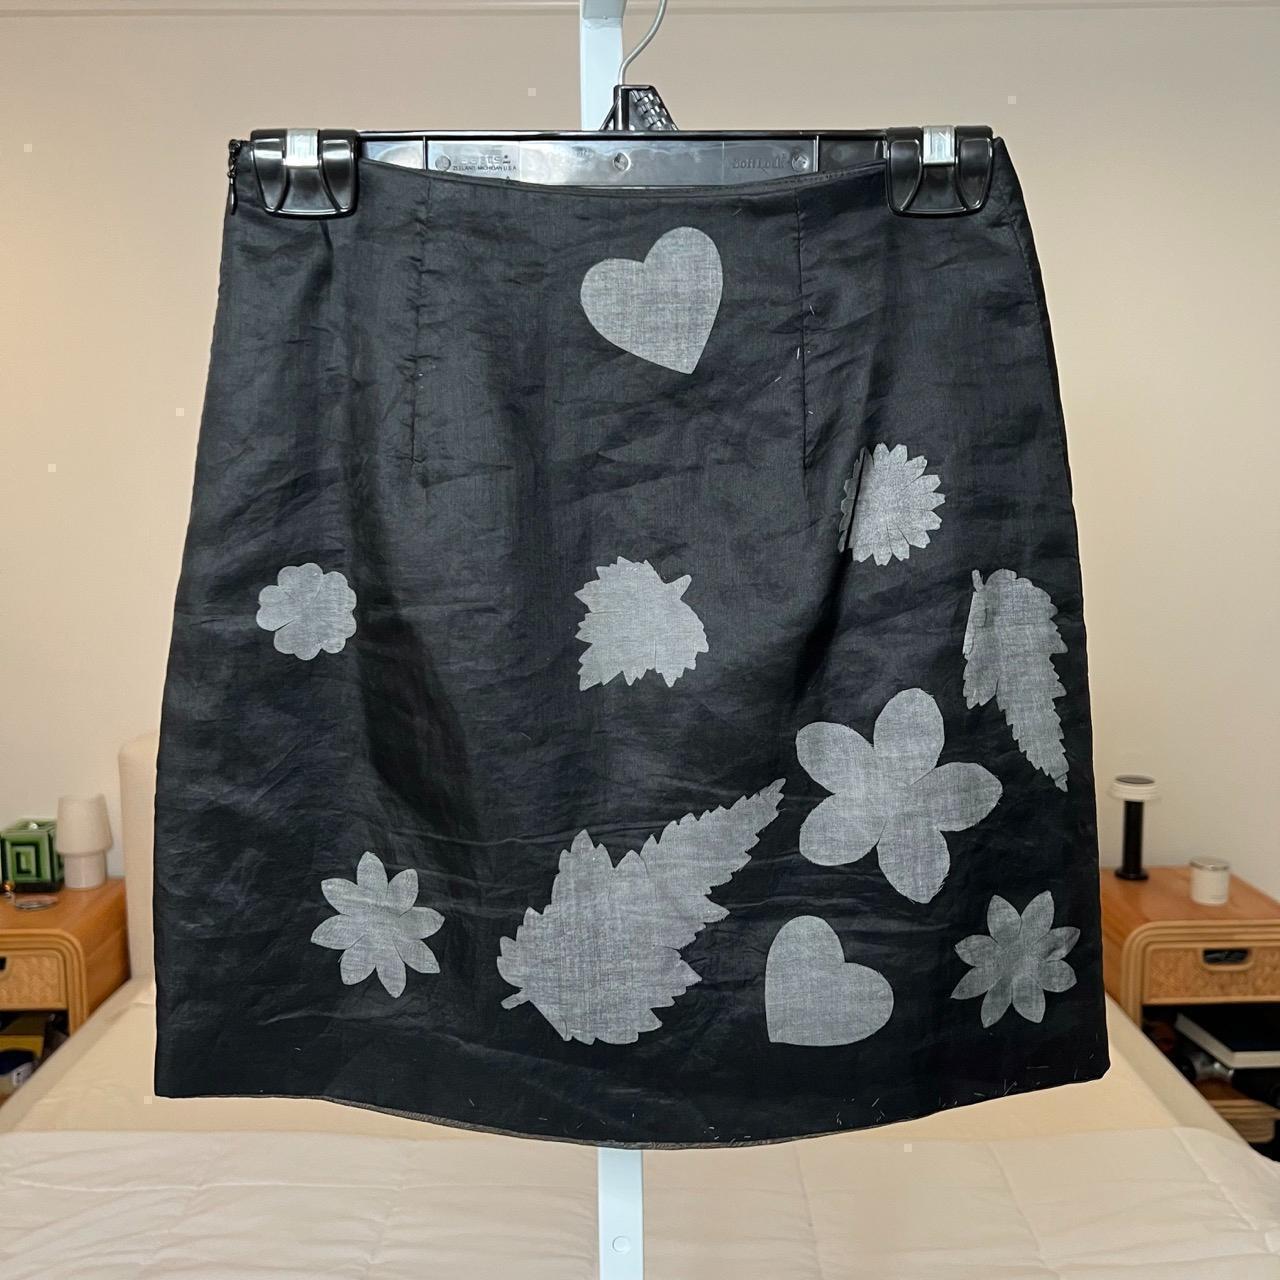 Moschino Cheap & Chic Women's Grey and Black Skirt (2)